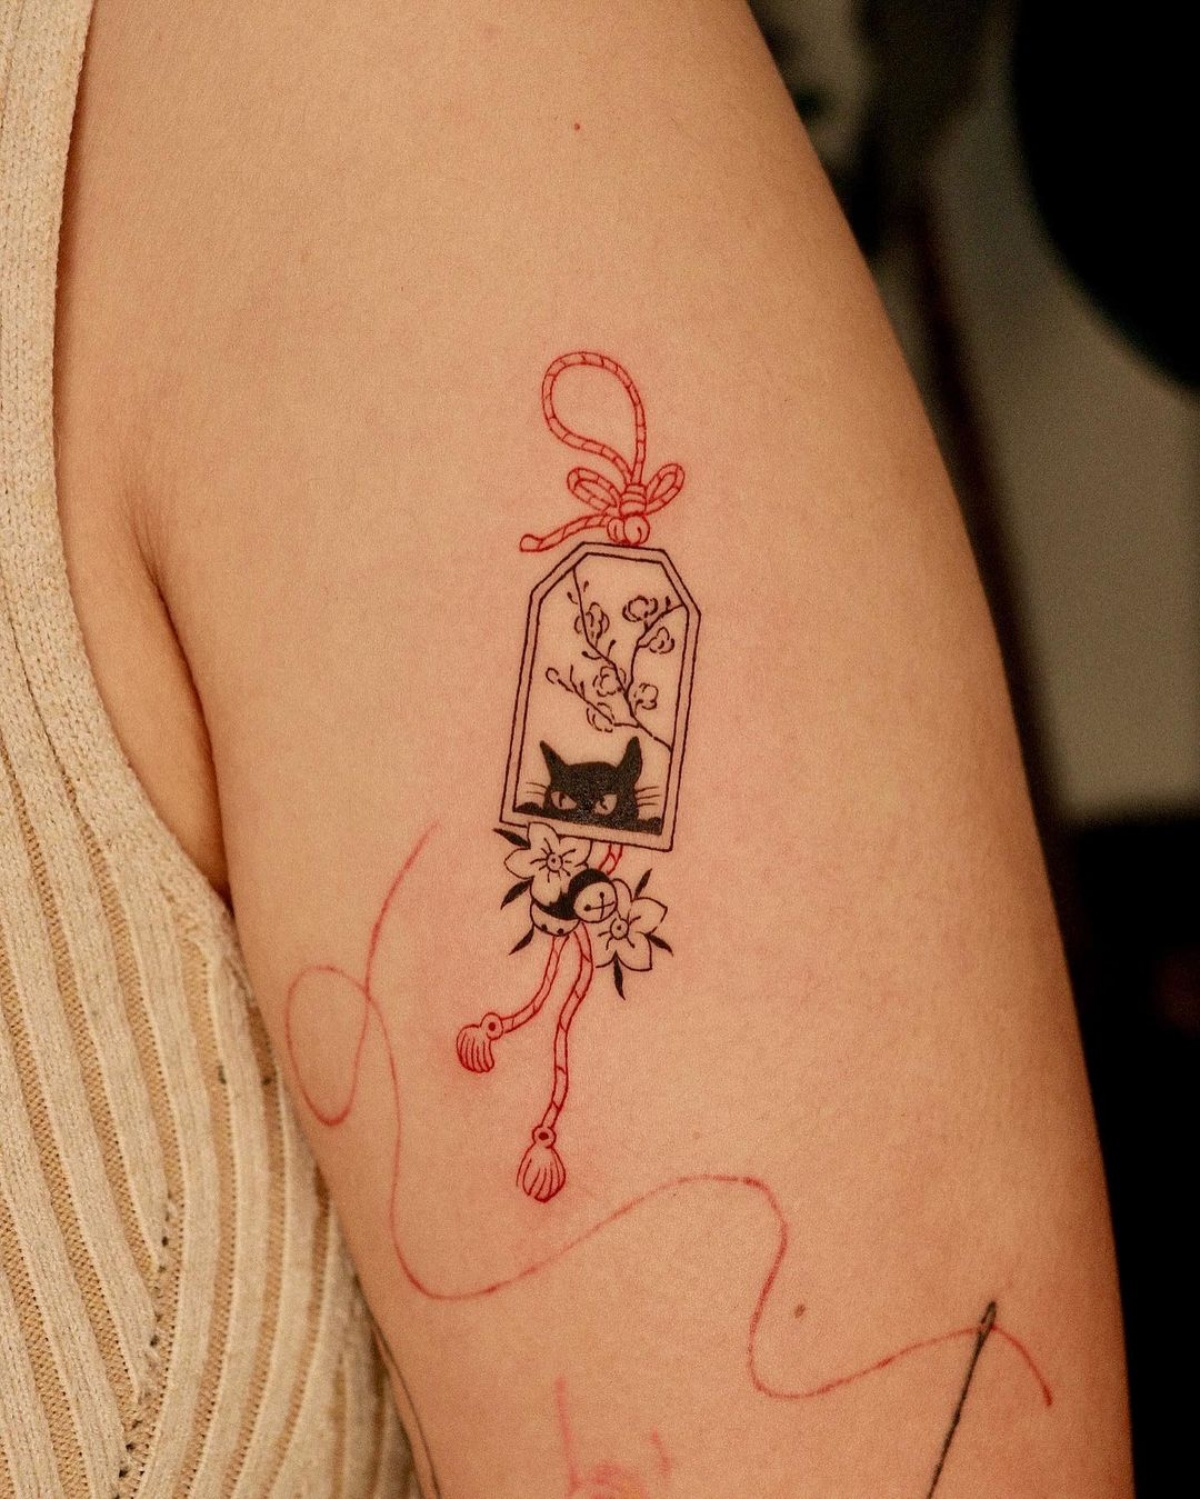 tatuaggio sul braccio donna bigliettino con disegno